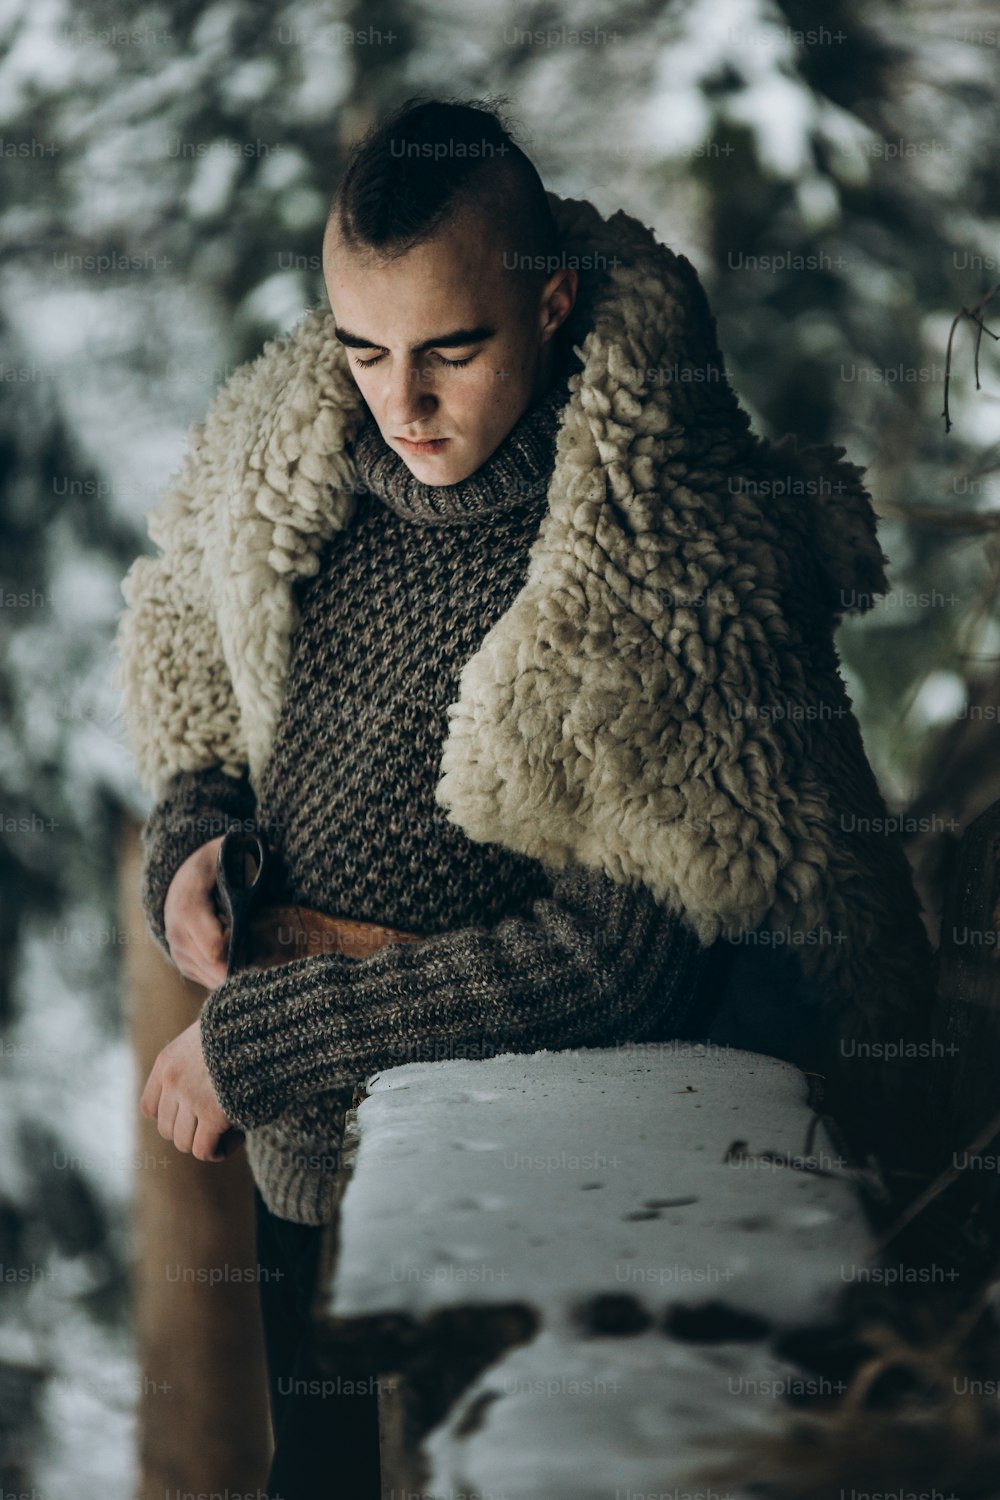 guerrero vikingo con hacha de acero posando cerca de una cabaña de madera en el bosque invernal escandinavo, cosplay vikingo de thor, traje tradicional noruego, hombre guapo con peinado mohawk parado al aire libre